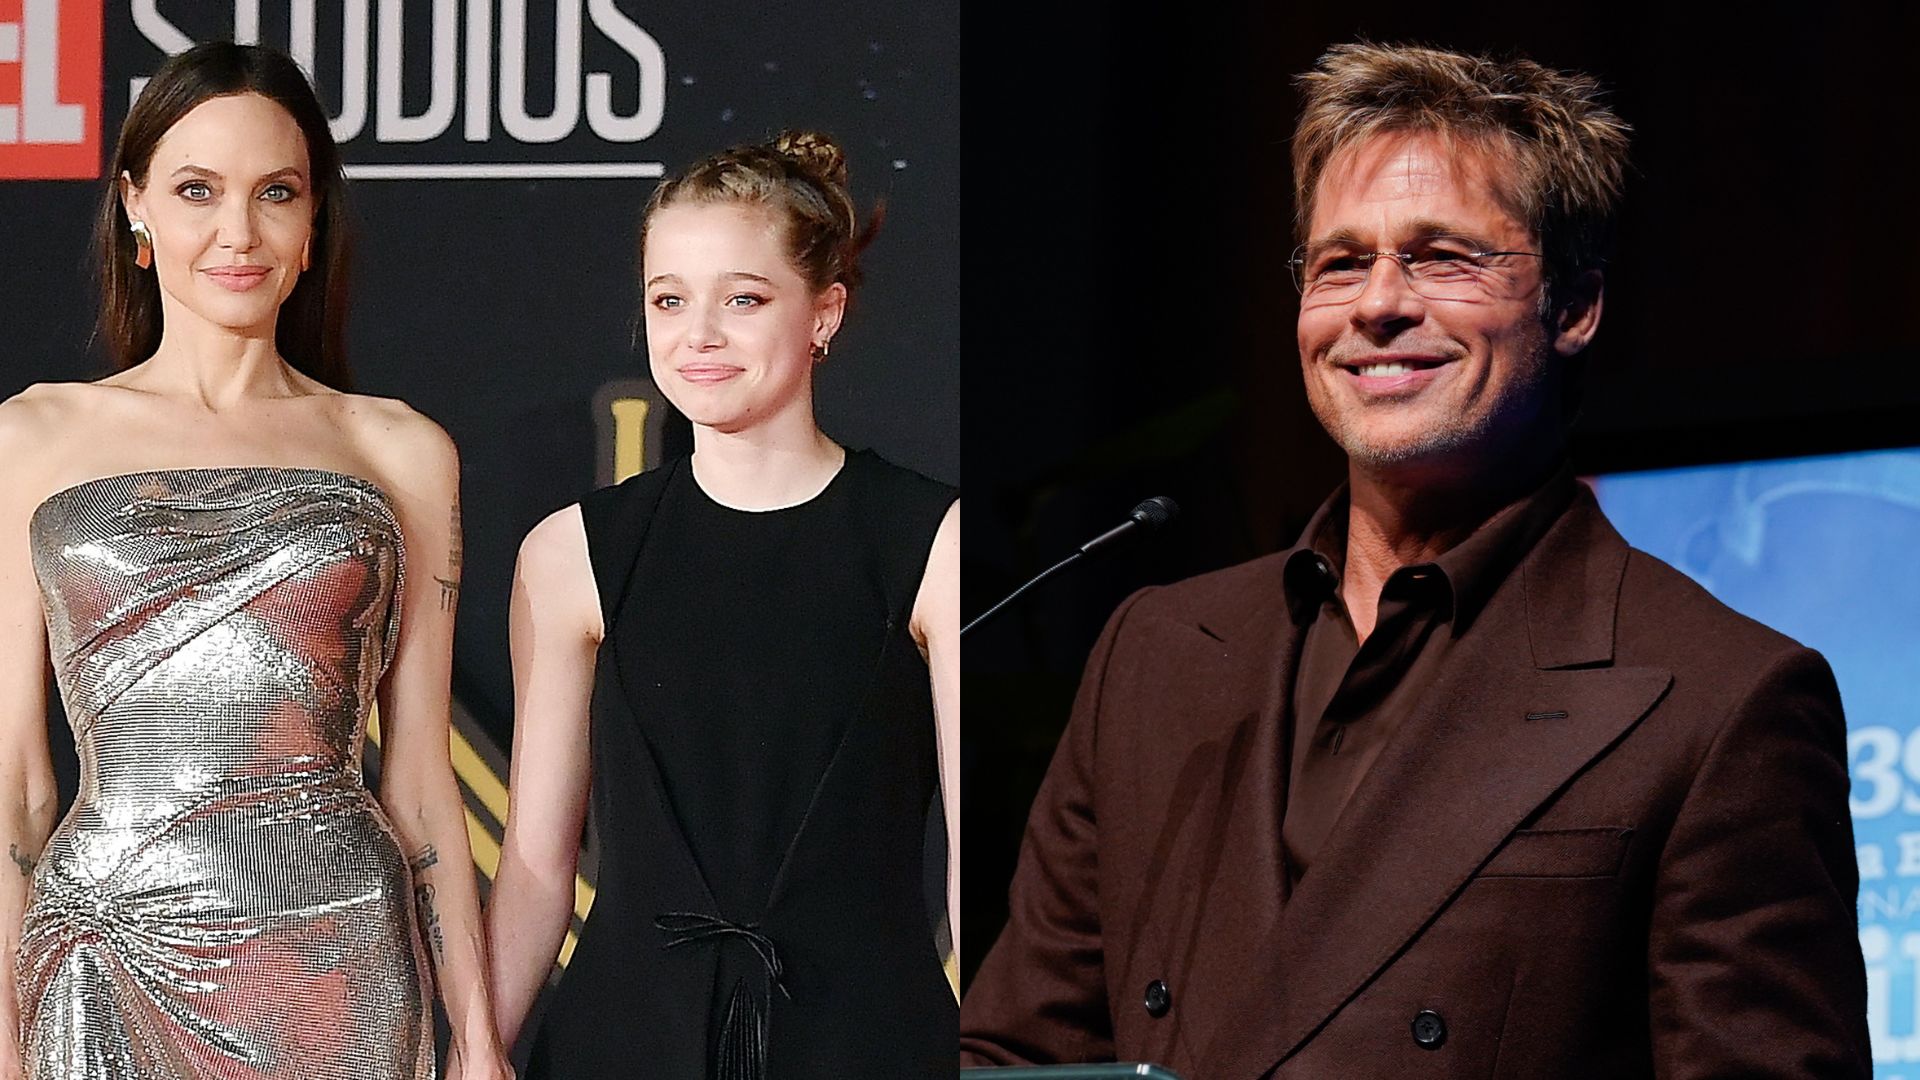 Shiloh, filha de Angelina Jolie e Brad Pitt, anuncia em jornal que vai remover sobrenome do pai